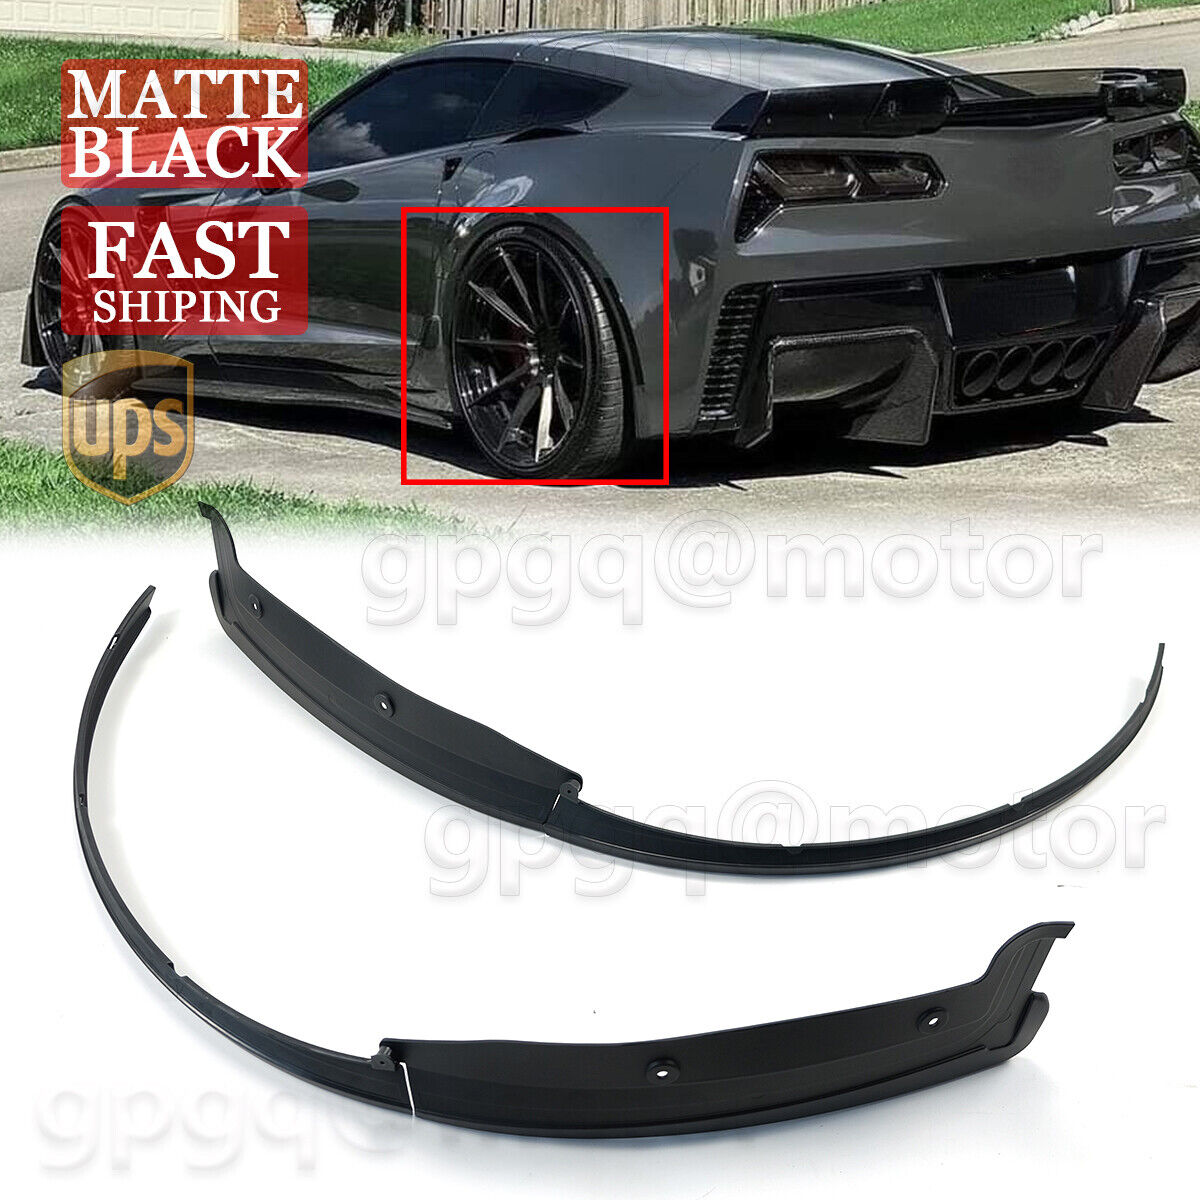 For Corvette C7 Z06 2014-2019 Matte Rear Quarter Extension Pair Wheel Arch Trim